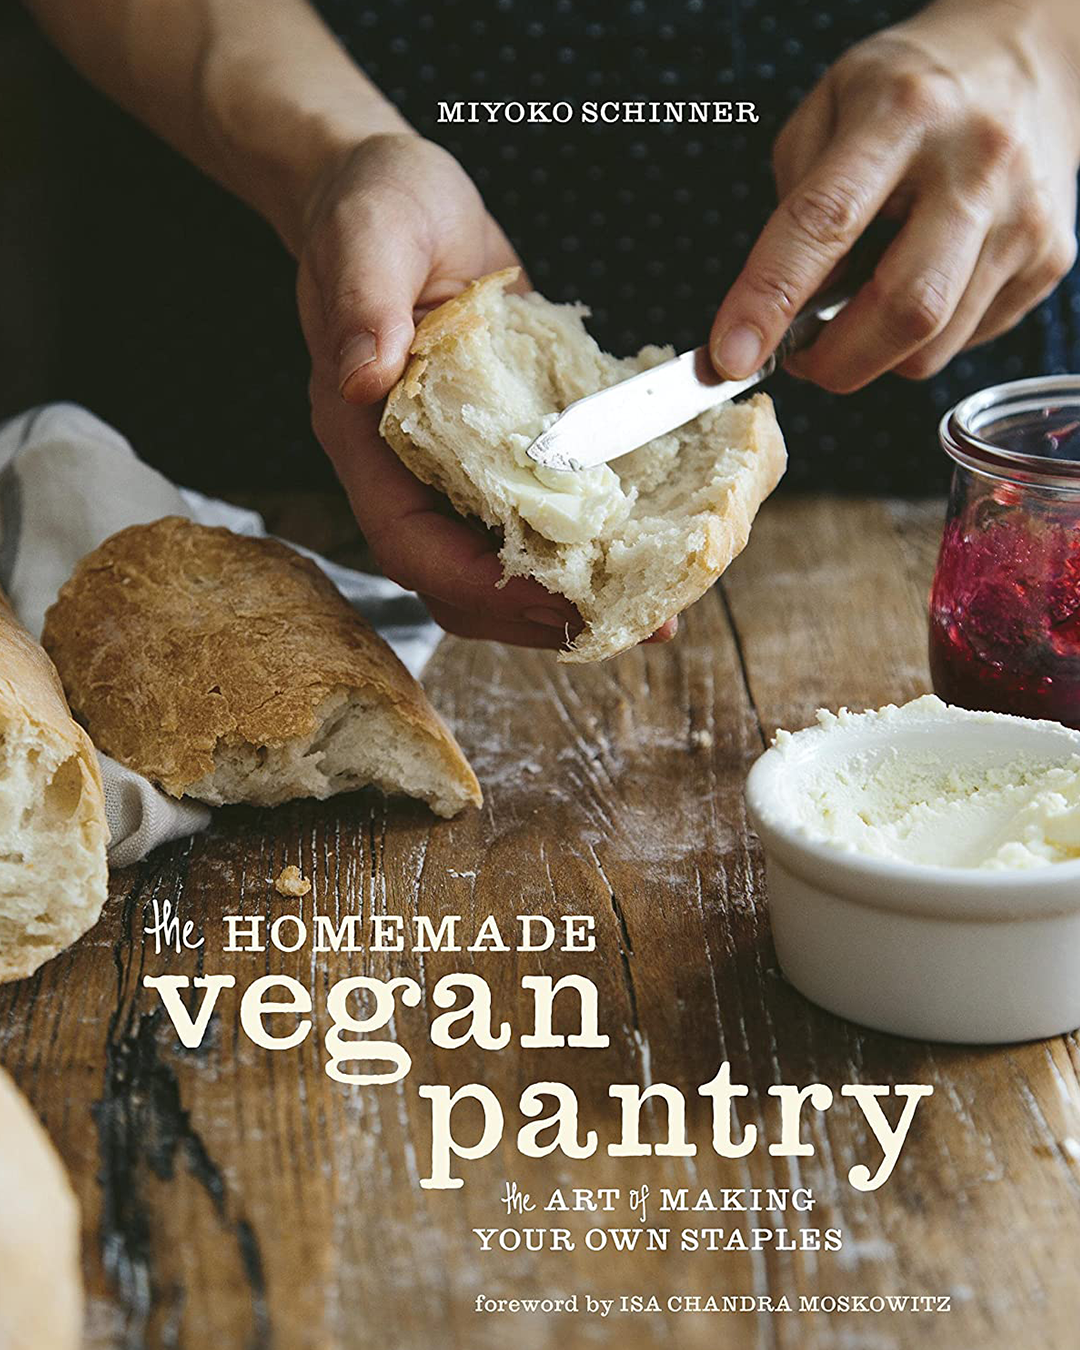 Homemade Vegan Pantry Cookbook Cover